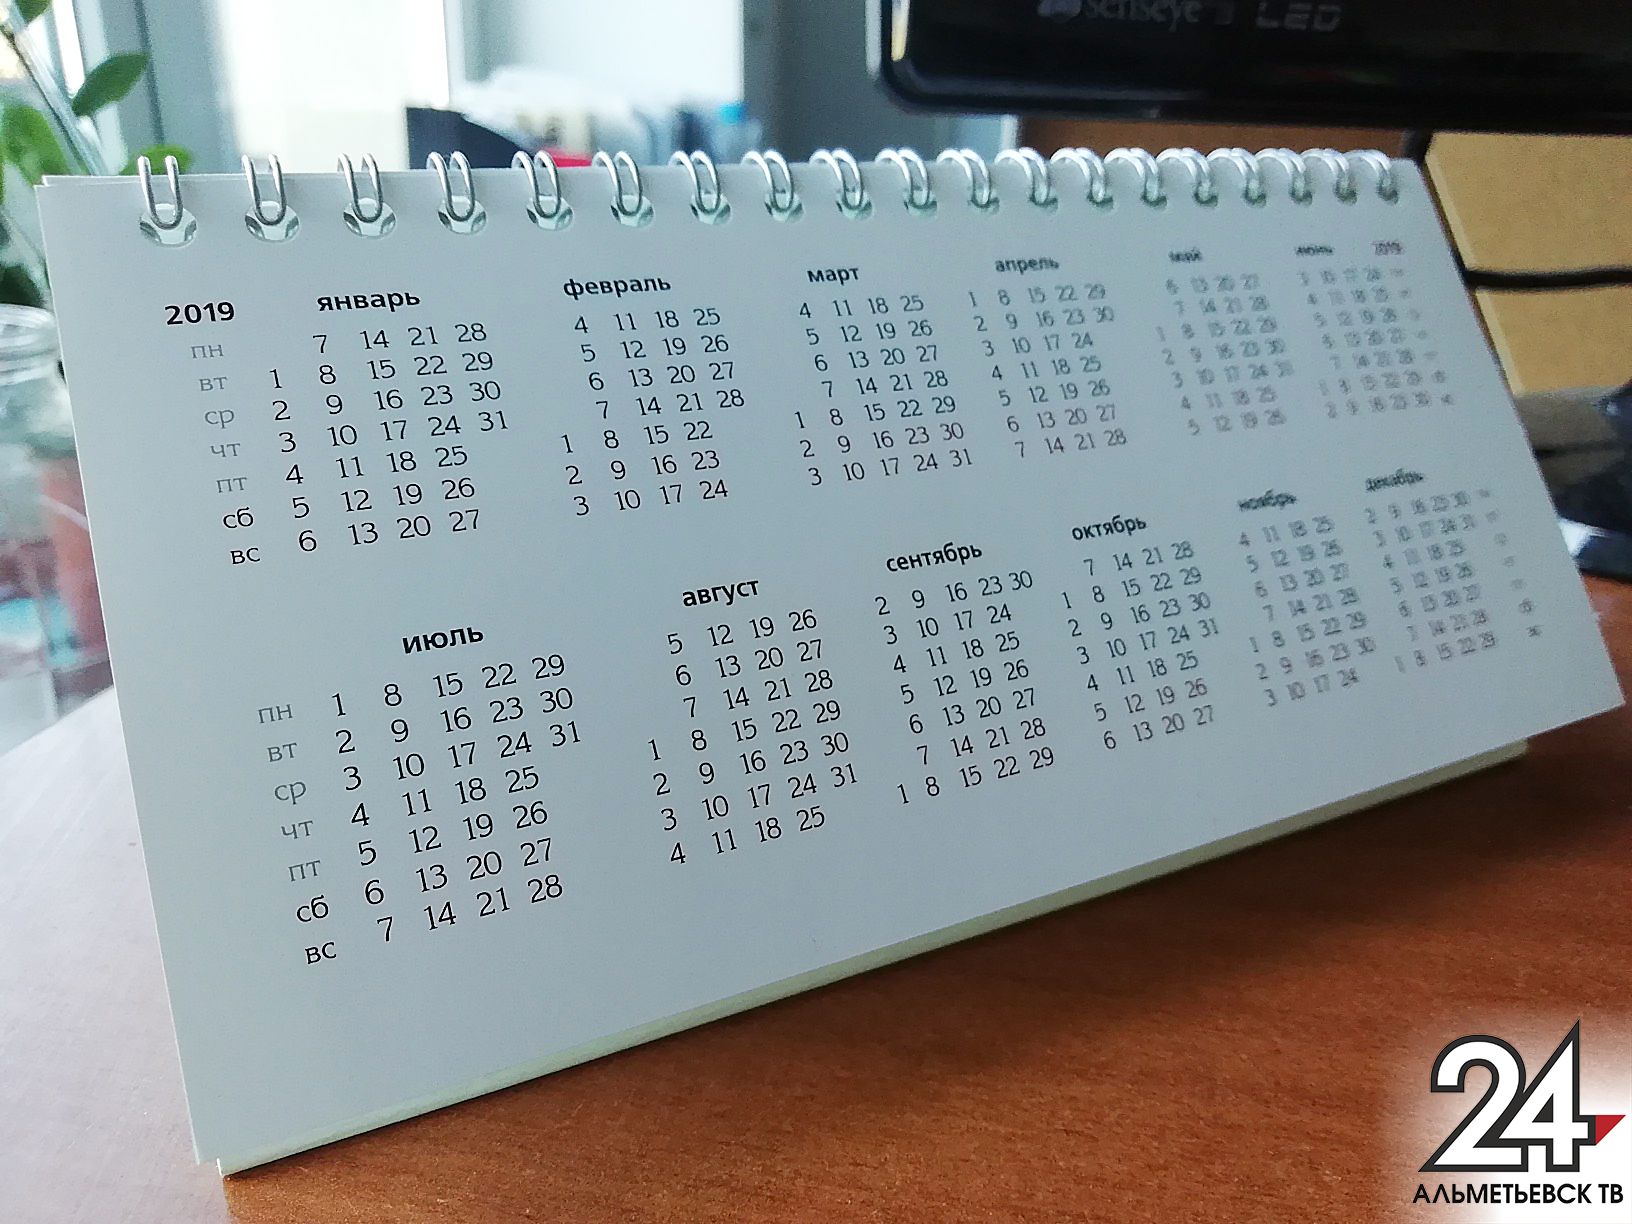 Как отдыхаем в 2019 году: календарь выходных и праздников